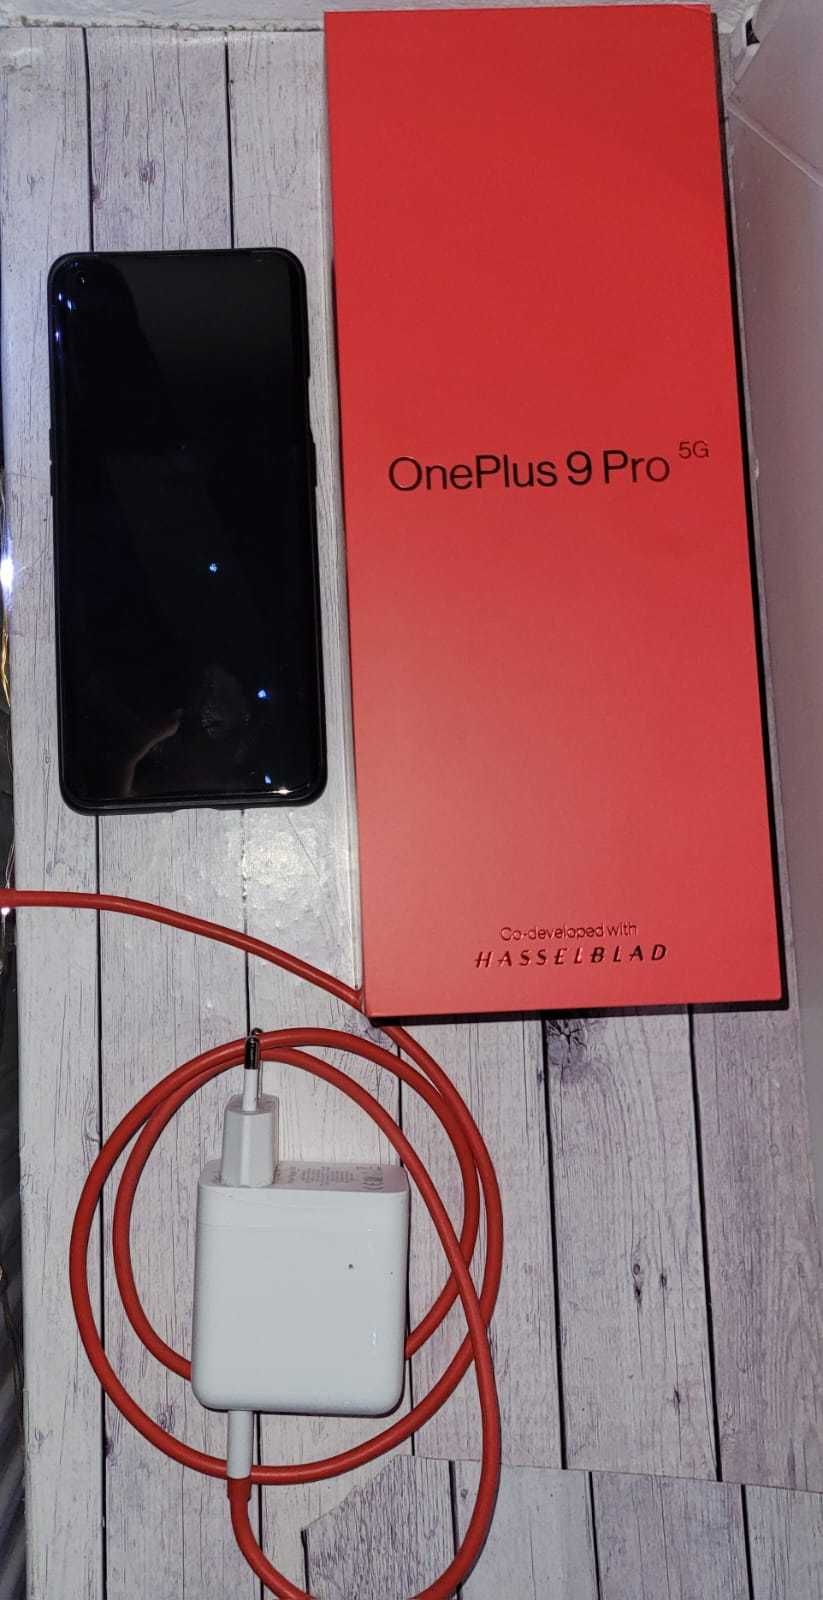 OnePlus 9 Pro, stare foarte bună, poze excelente